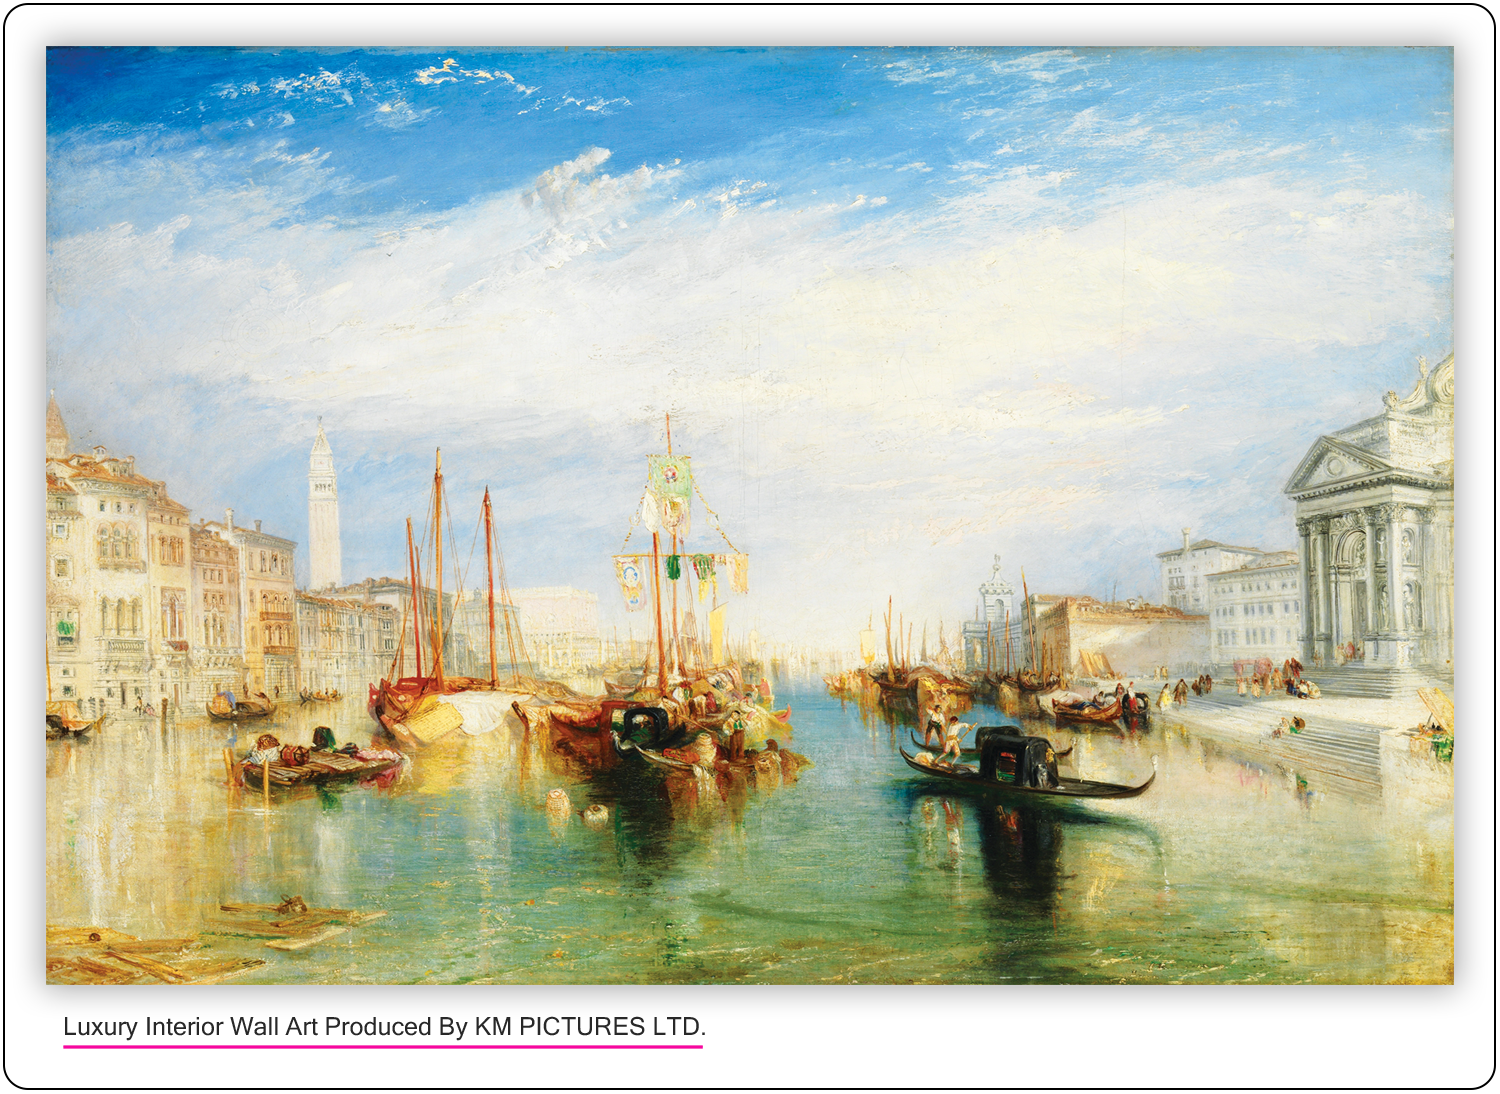 Venice: The Dogana and San Giorgio Maggiore, 1834